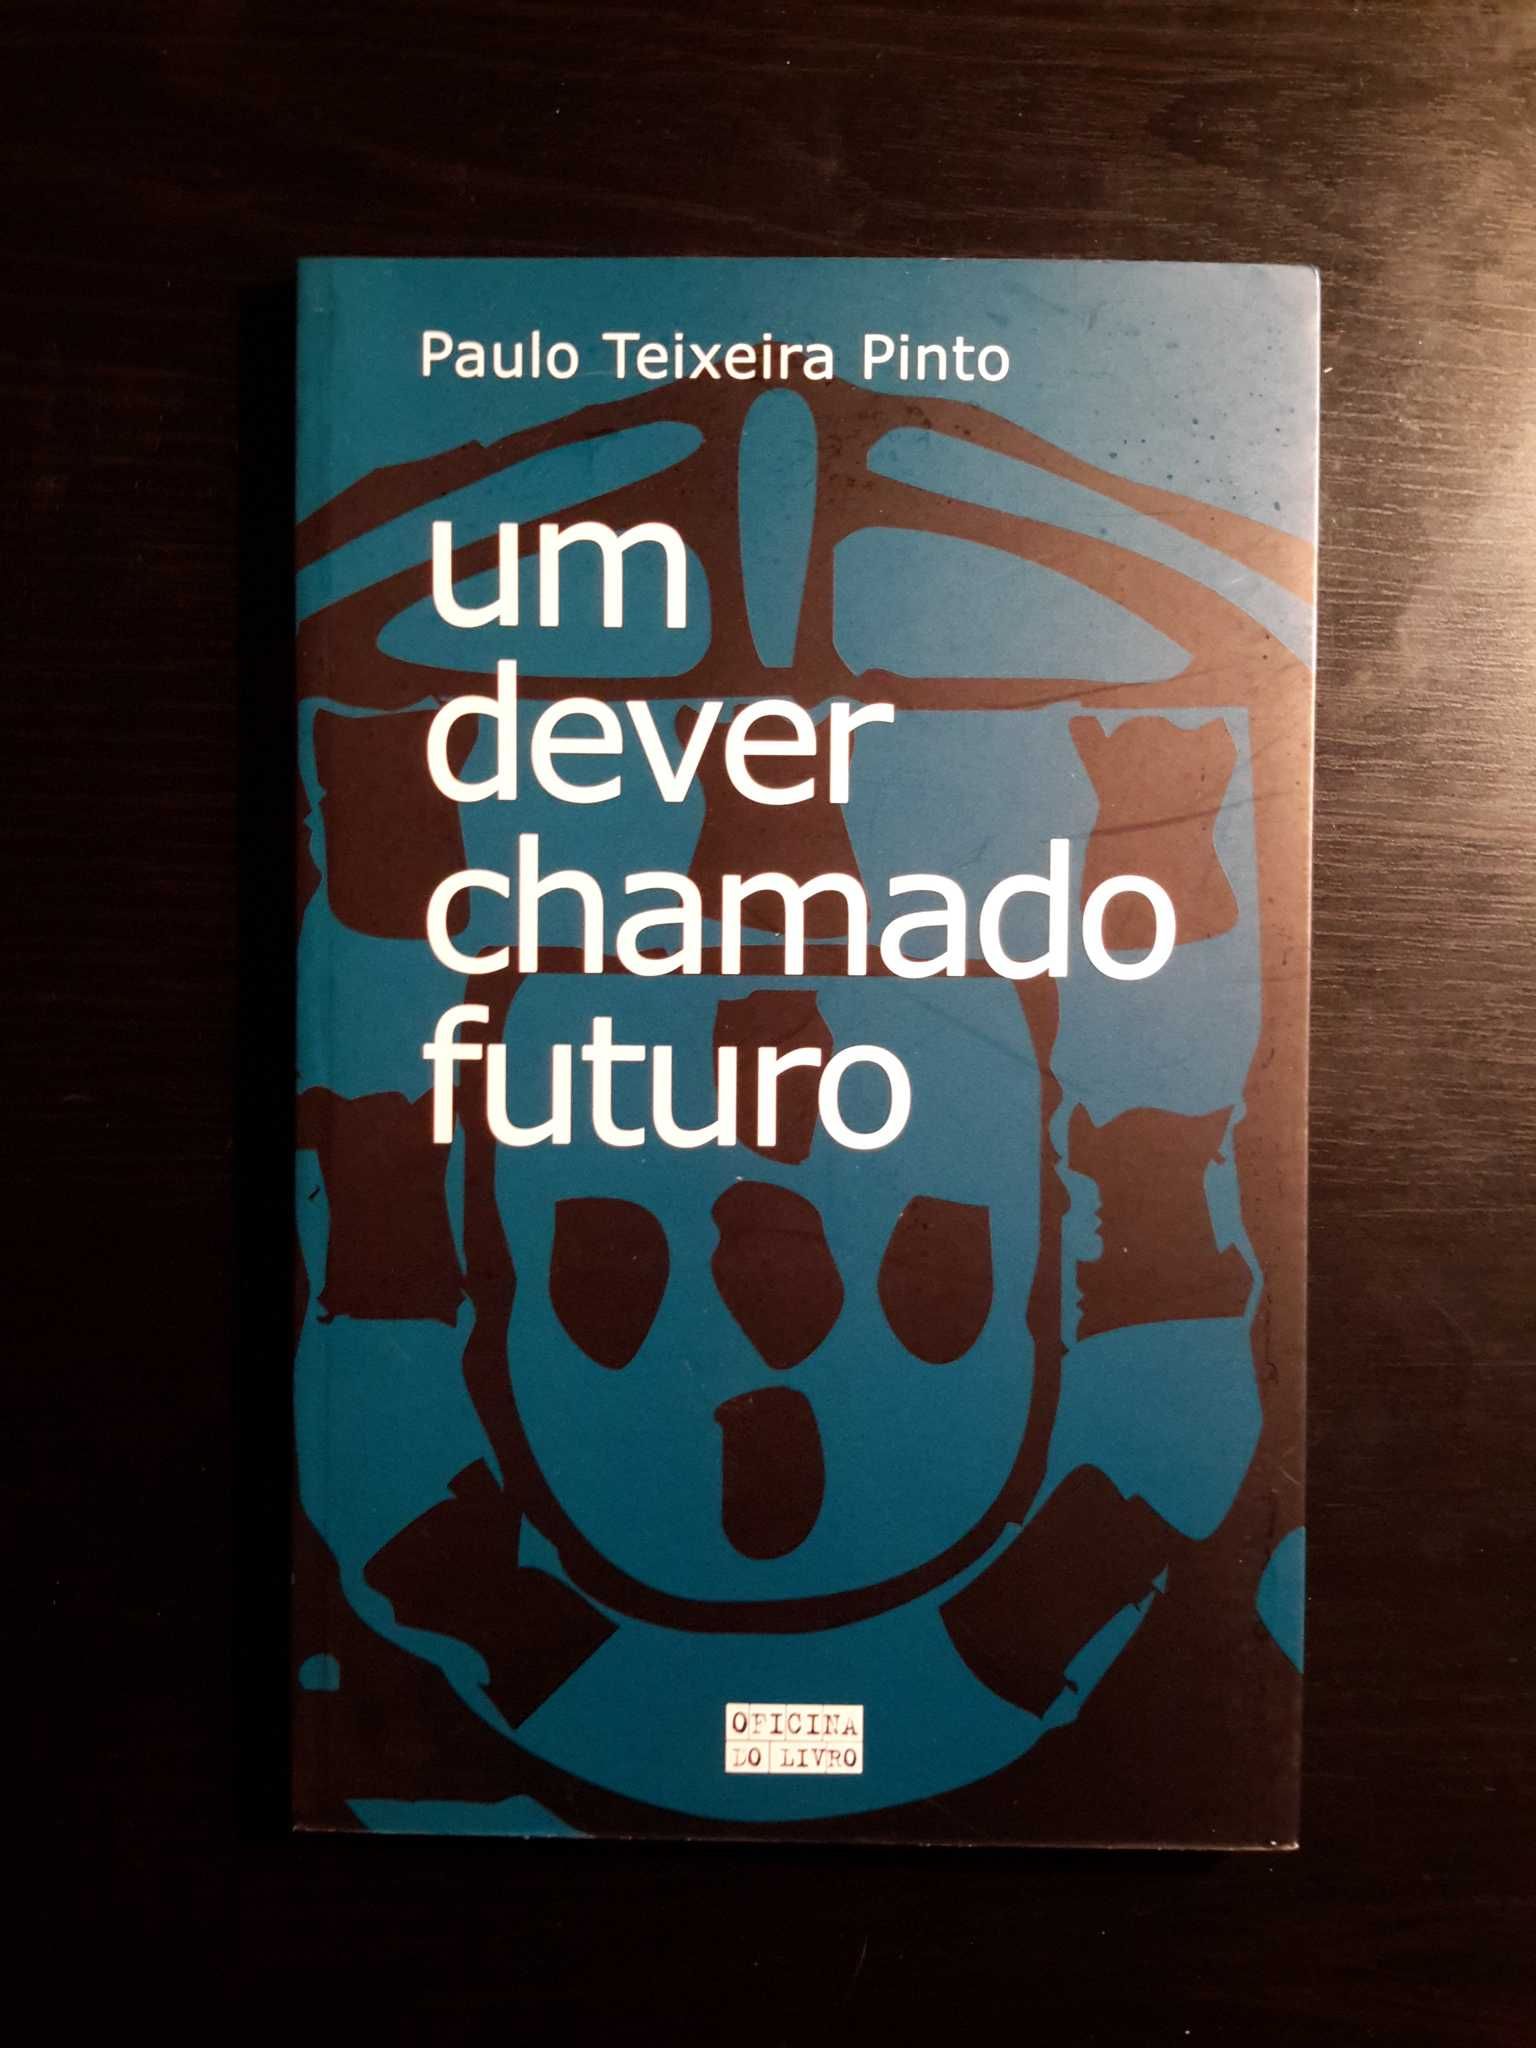 Paulo Teixeira Pinto - Um Dever Chamado Futuro